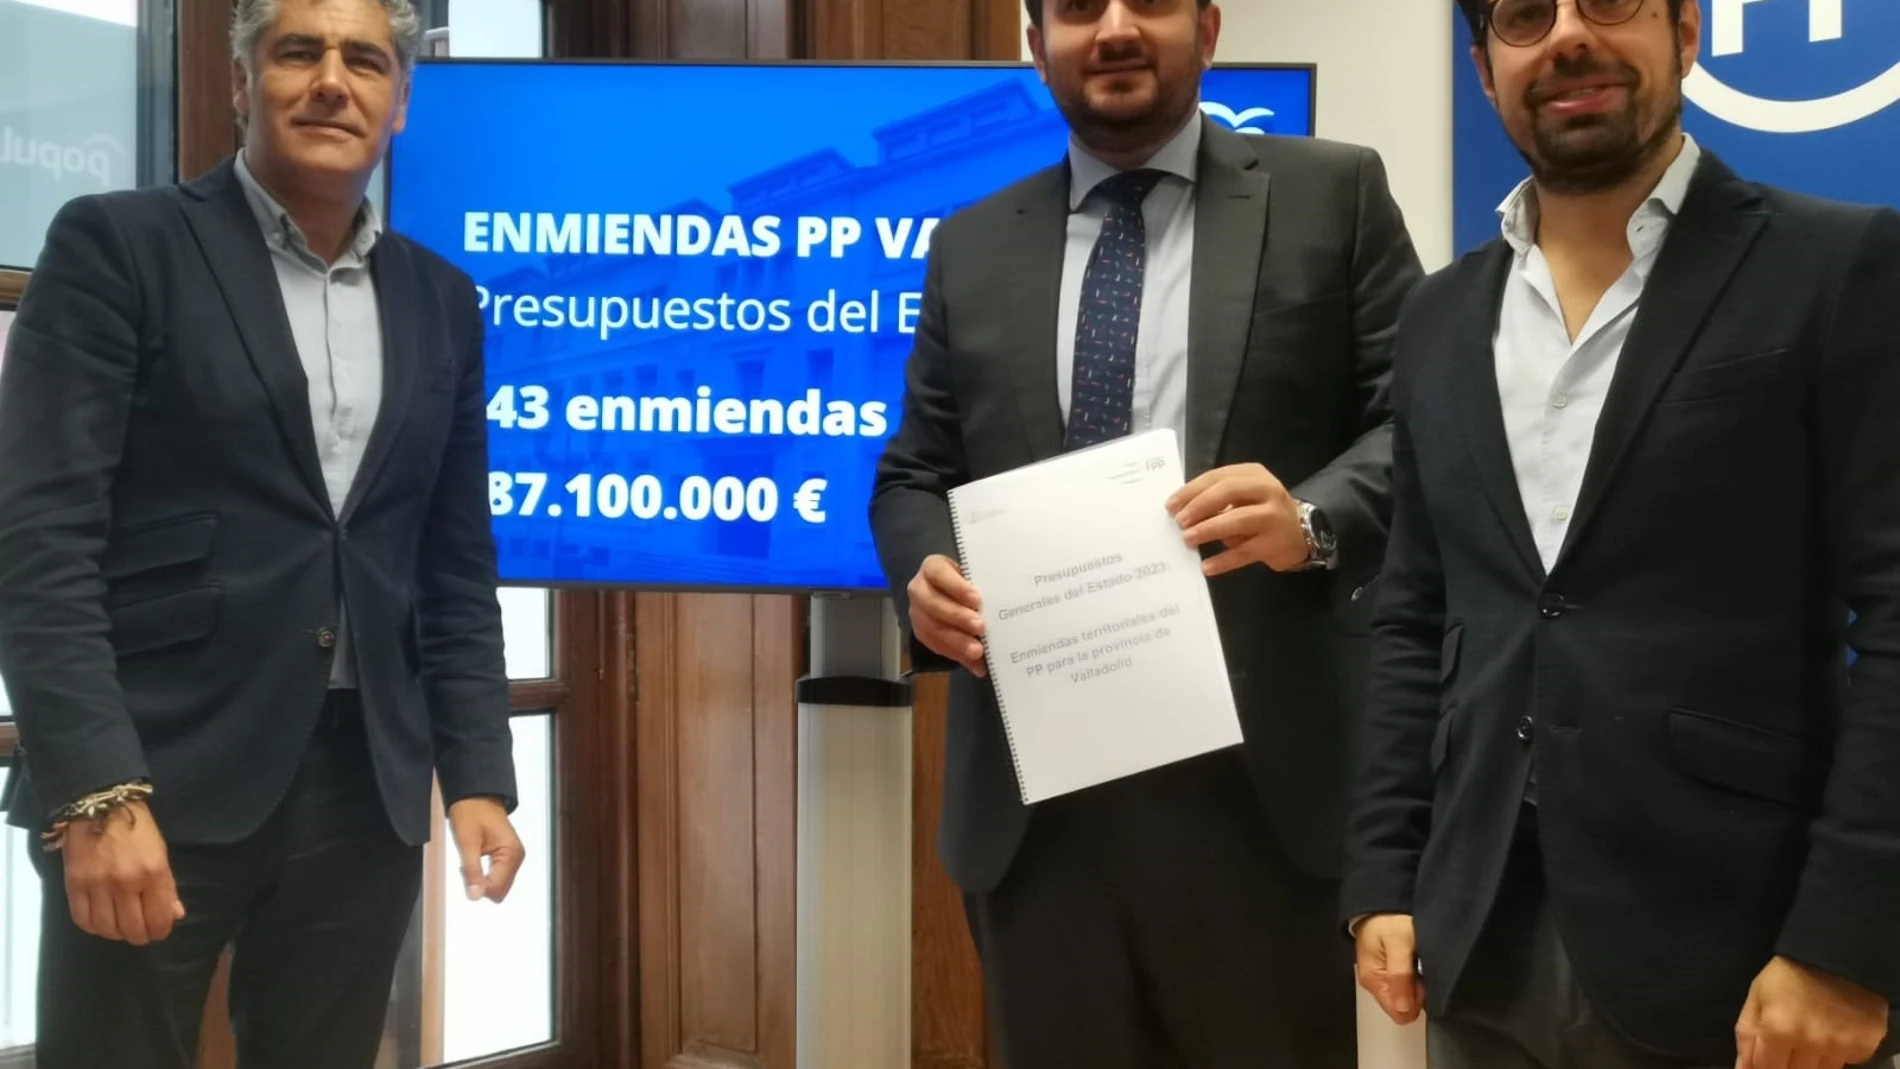 De izquierda a derecha, el senador del PP Alberto Plaza; el diputado José Ángel Alonso; y el diputado Eduardo Carazo, presentan las enmiedas